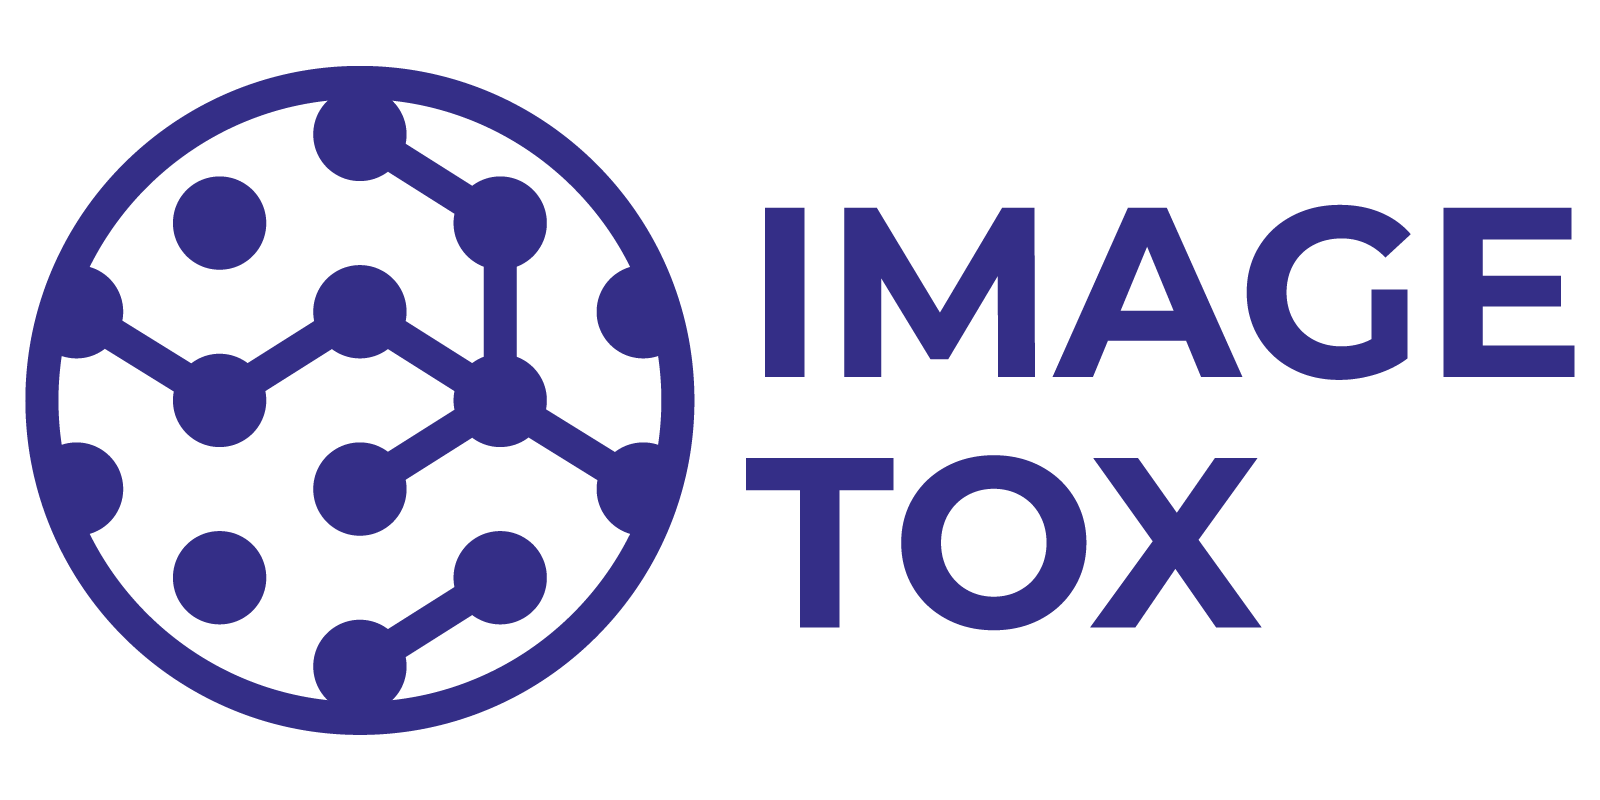 ImageTox logo